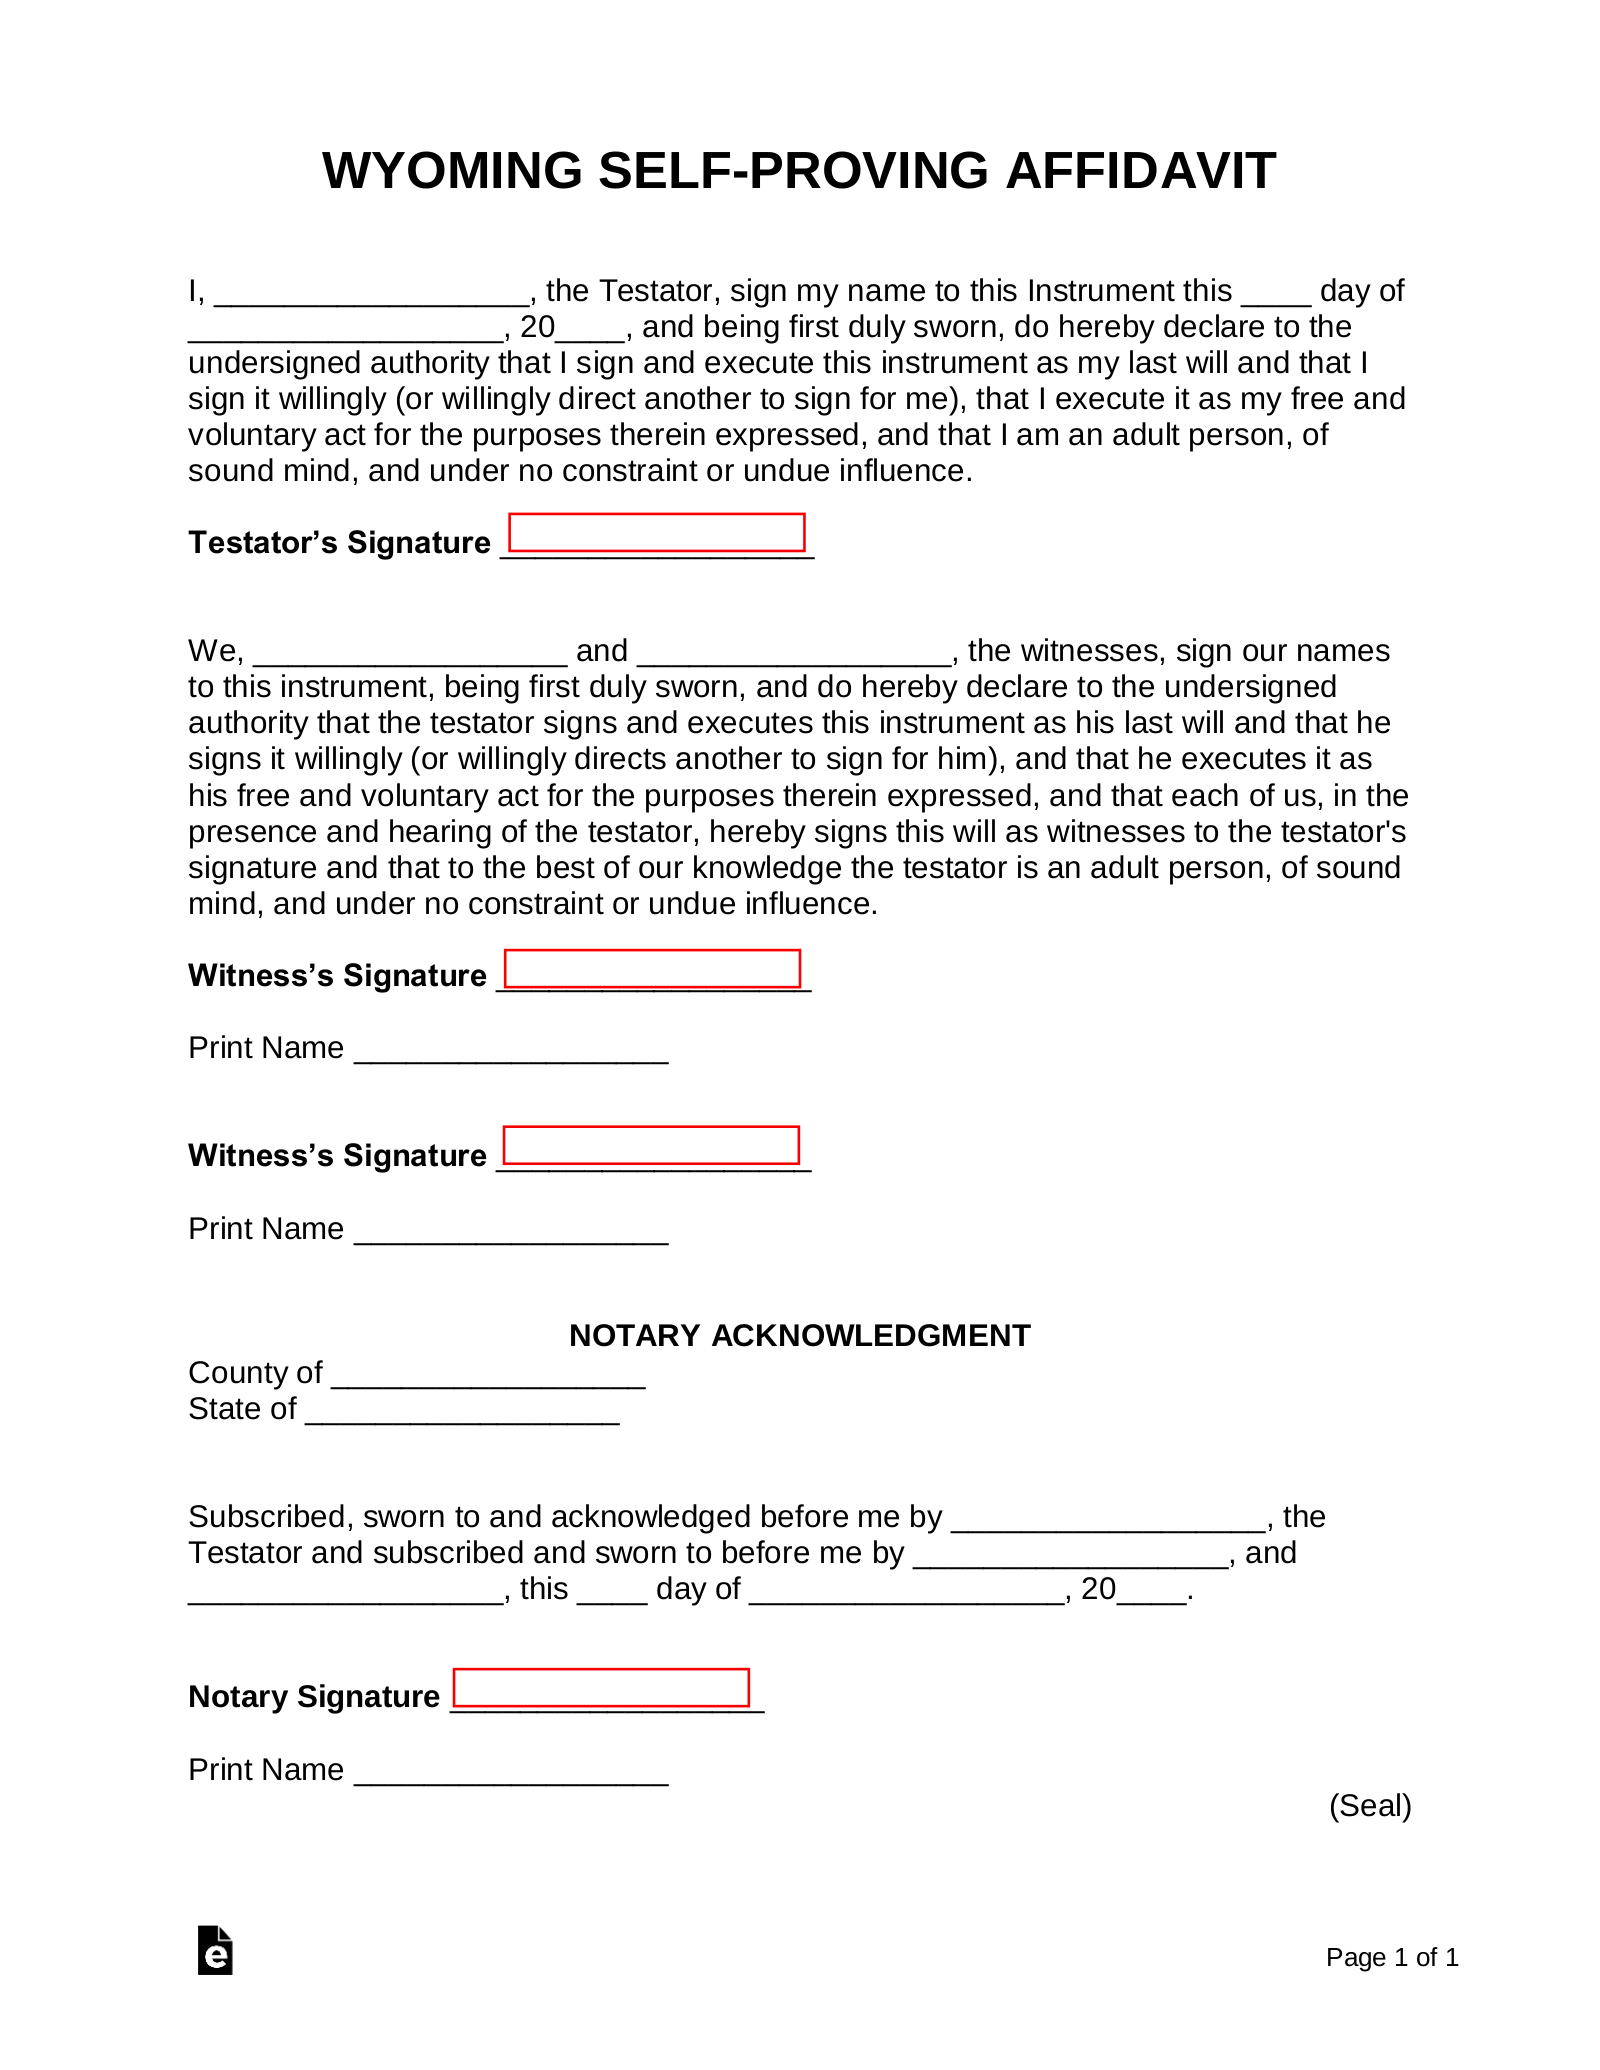 Free Wyoming Self-Proving Affidavit Form - PDF  Word – eForms